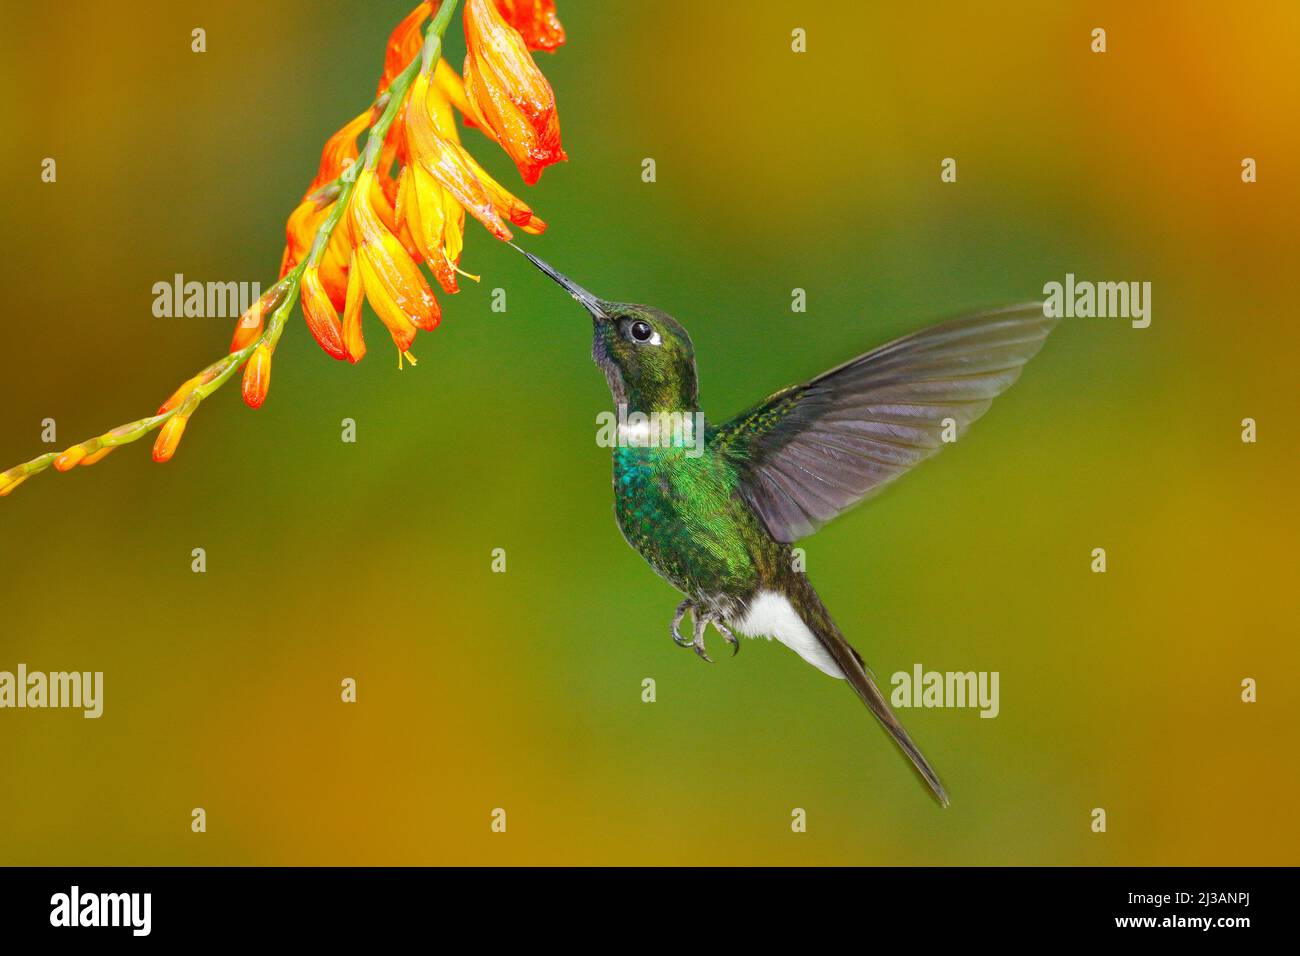 Uccello con fiore arancione. Colibrì volante. Scena d'azione con hummingbird. Tormalina Sunangel mangiare nettare da bel fiore giallo in Ecuador. Foto Stock